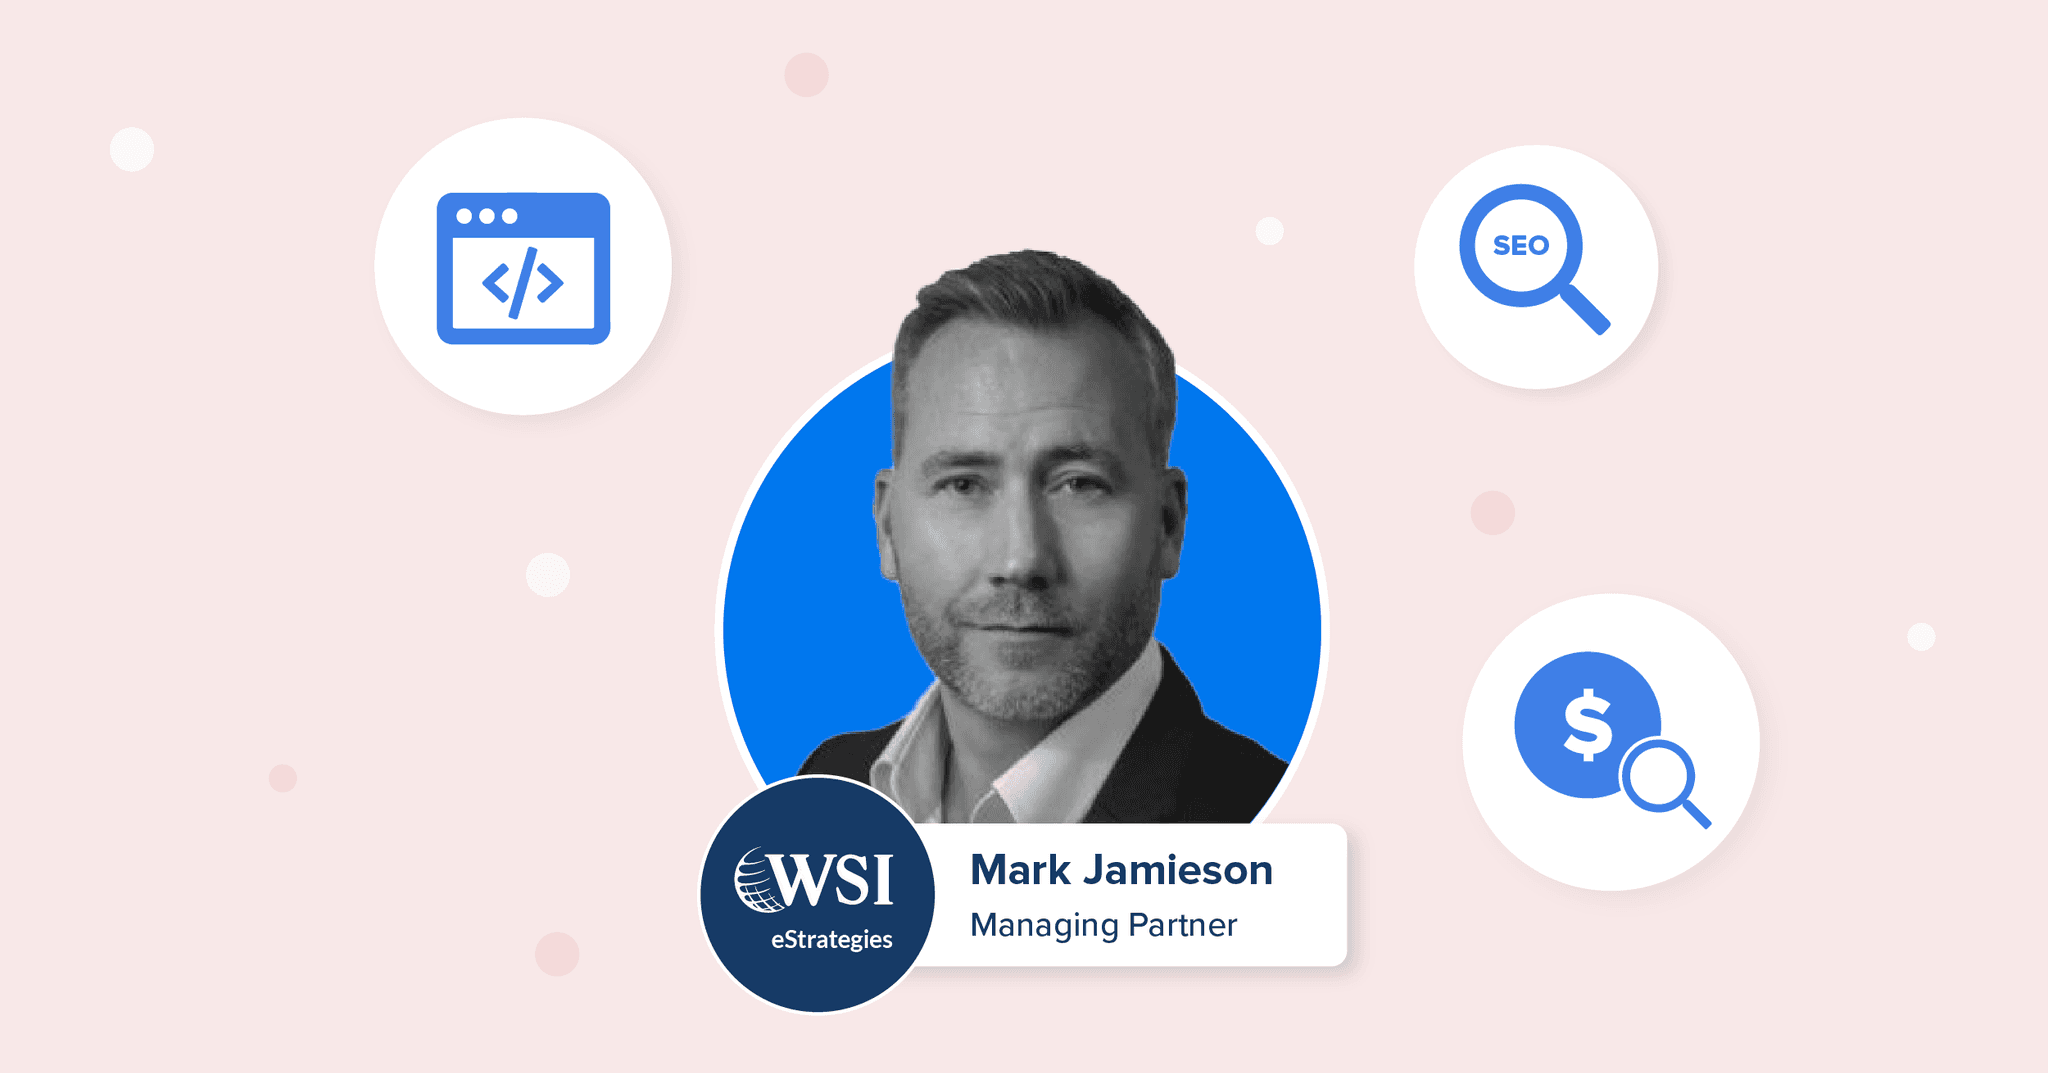 Mark Jamieson - Managing Partner of WSI eStrategies